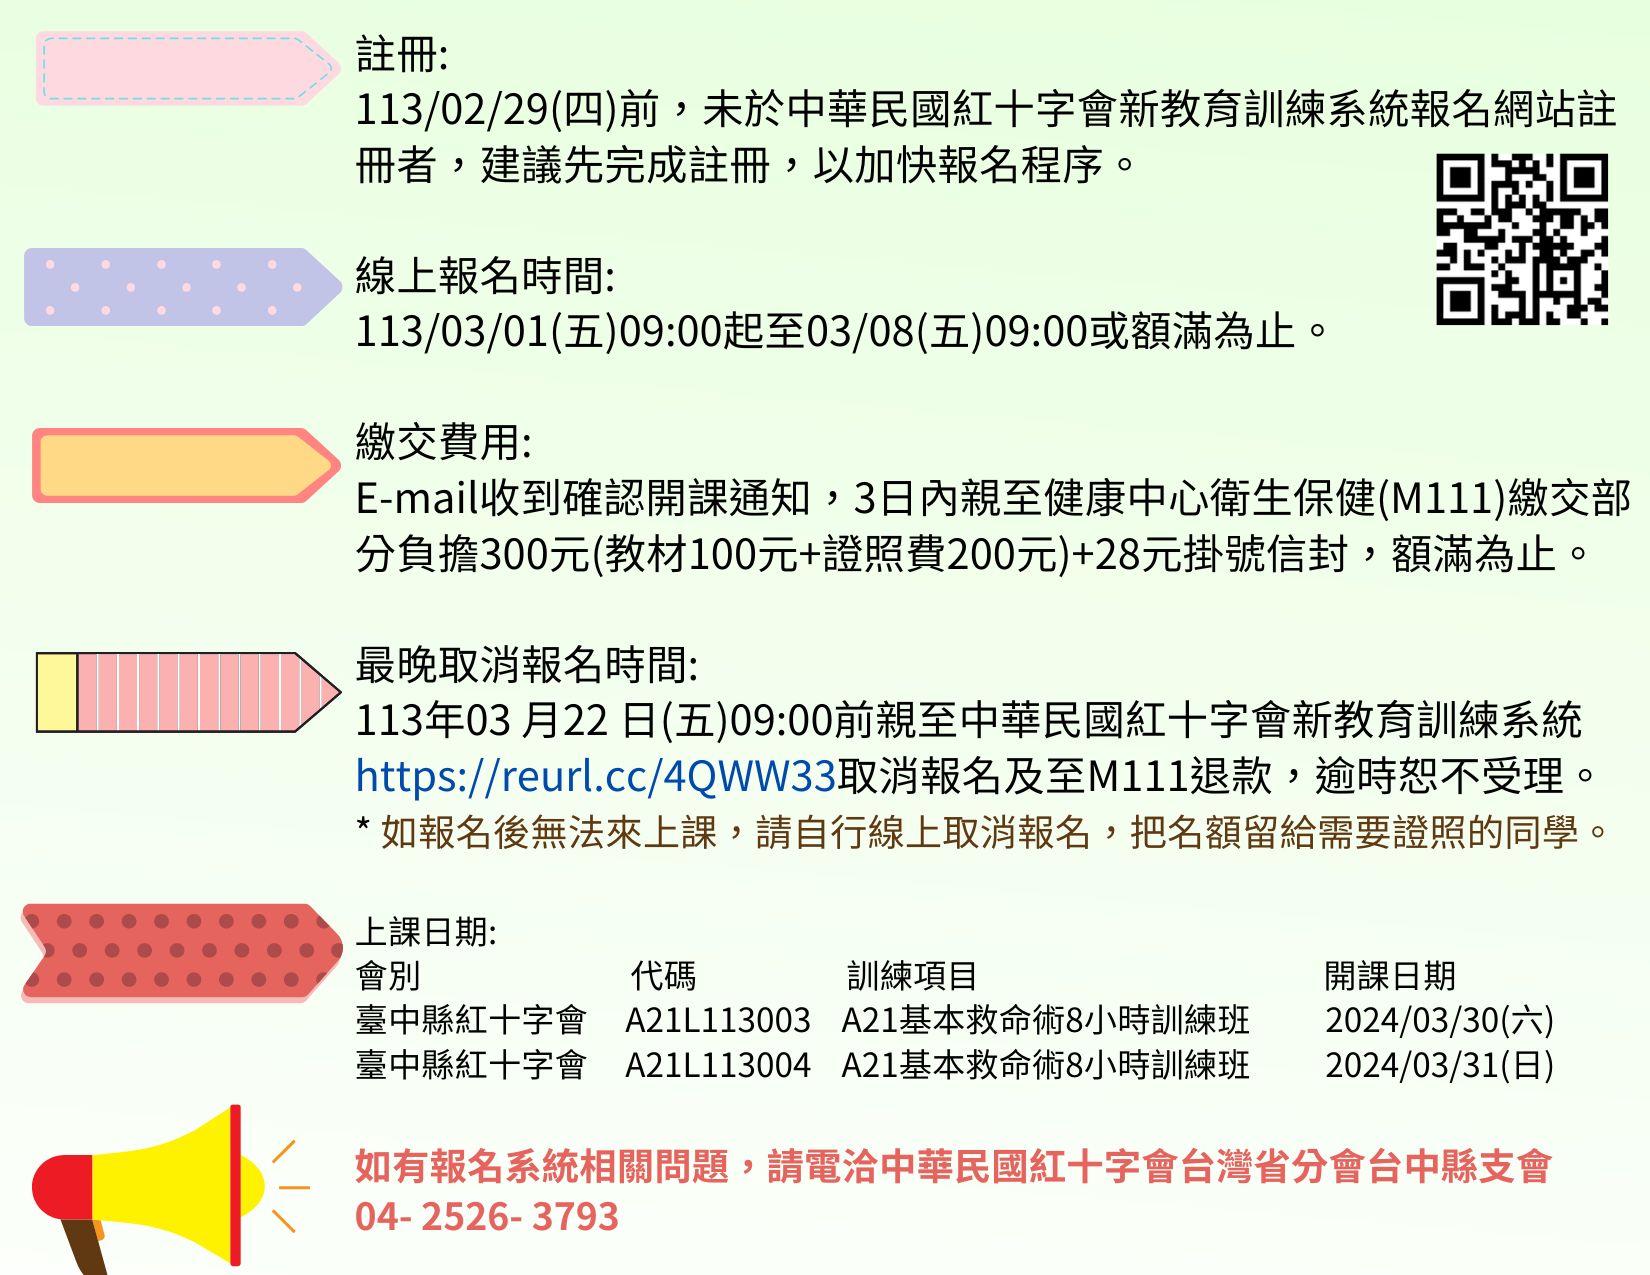 4.未於中華民國紅十字會新教育訓練系統報名網站註冊者__建議先完成註冊_以加快報名程序_.jpg